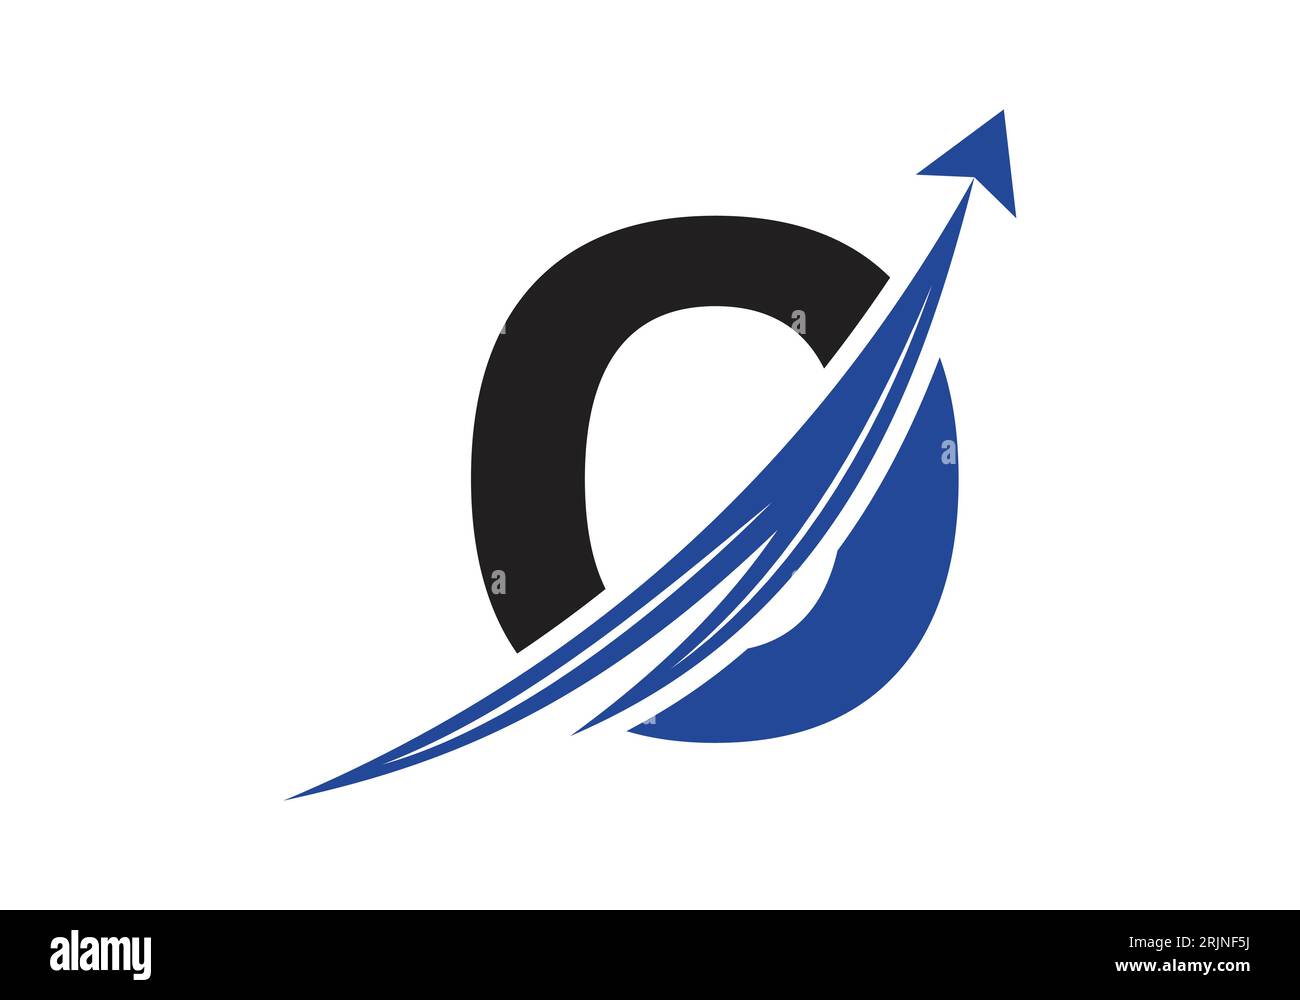 Logo de financement avec lettre O. Concept de logo financier ou de réussite. Logo pour l'entreprise comptable et l'identité de l'entreprise Illustration de Vecteur